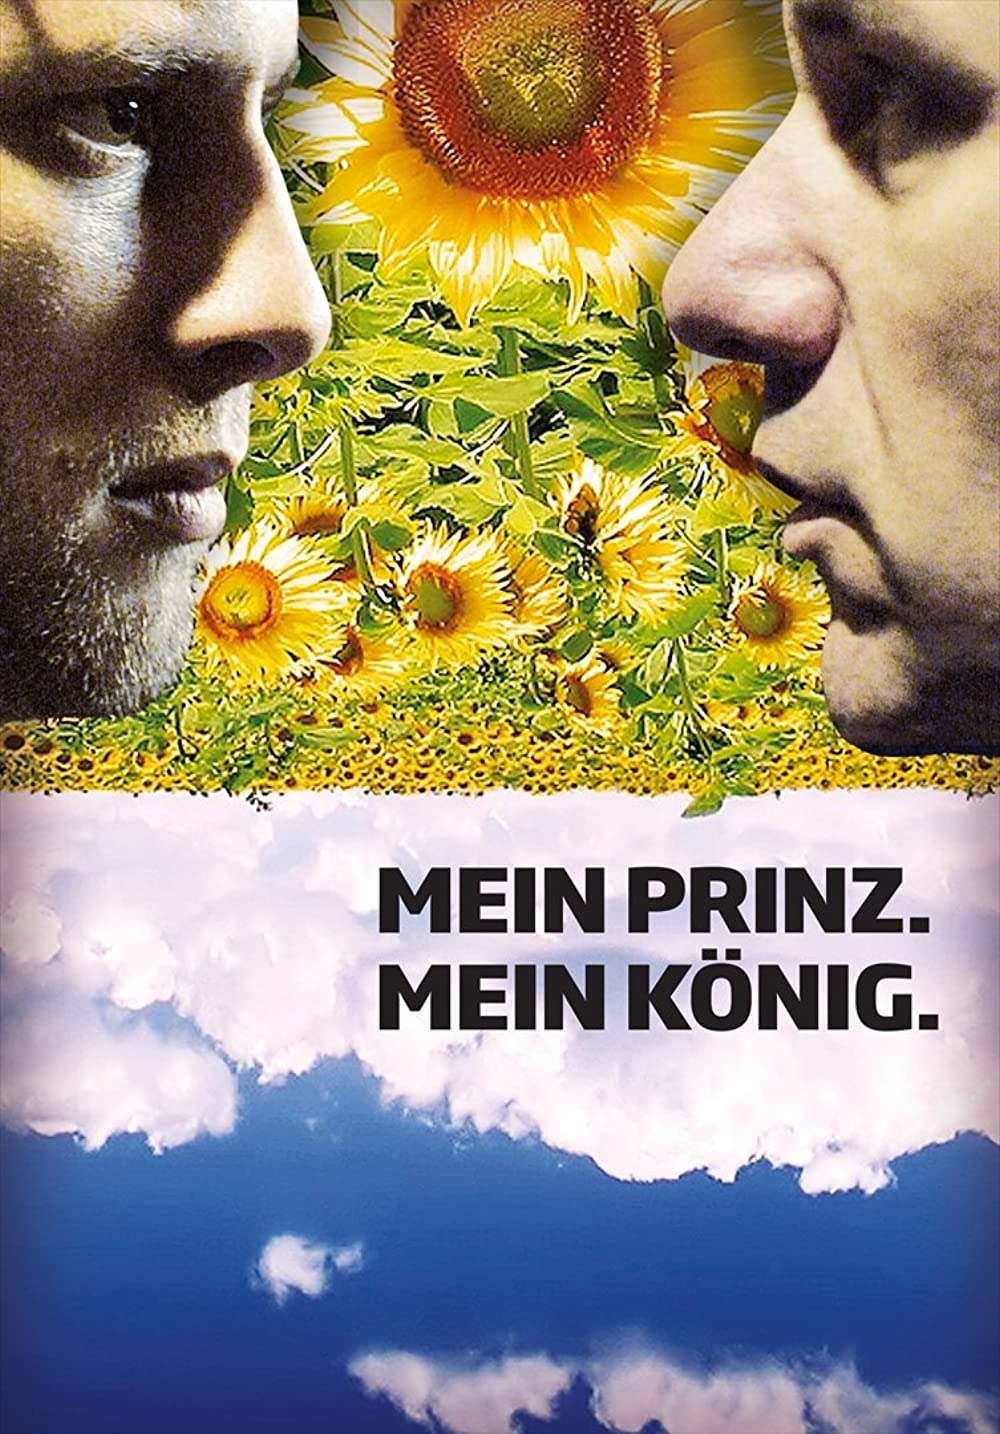 Film Poster "Mein Prinz. Mein König"